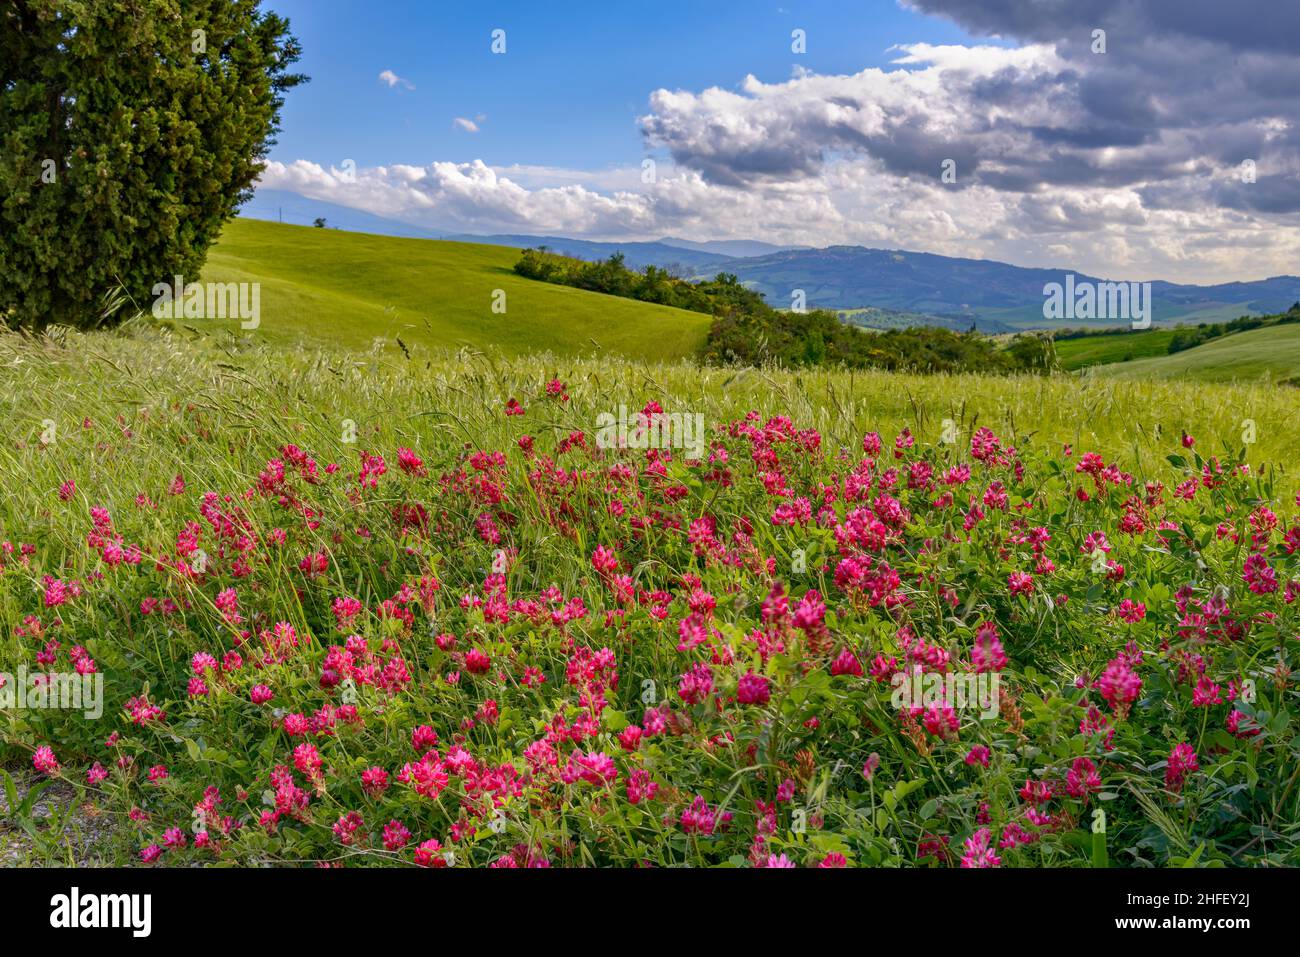 French Honeysuckle (Hedysarum coronarium) flowering in Tuscany Stock Photo